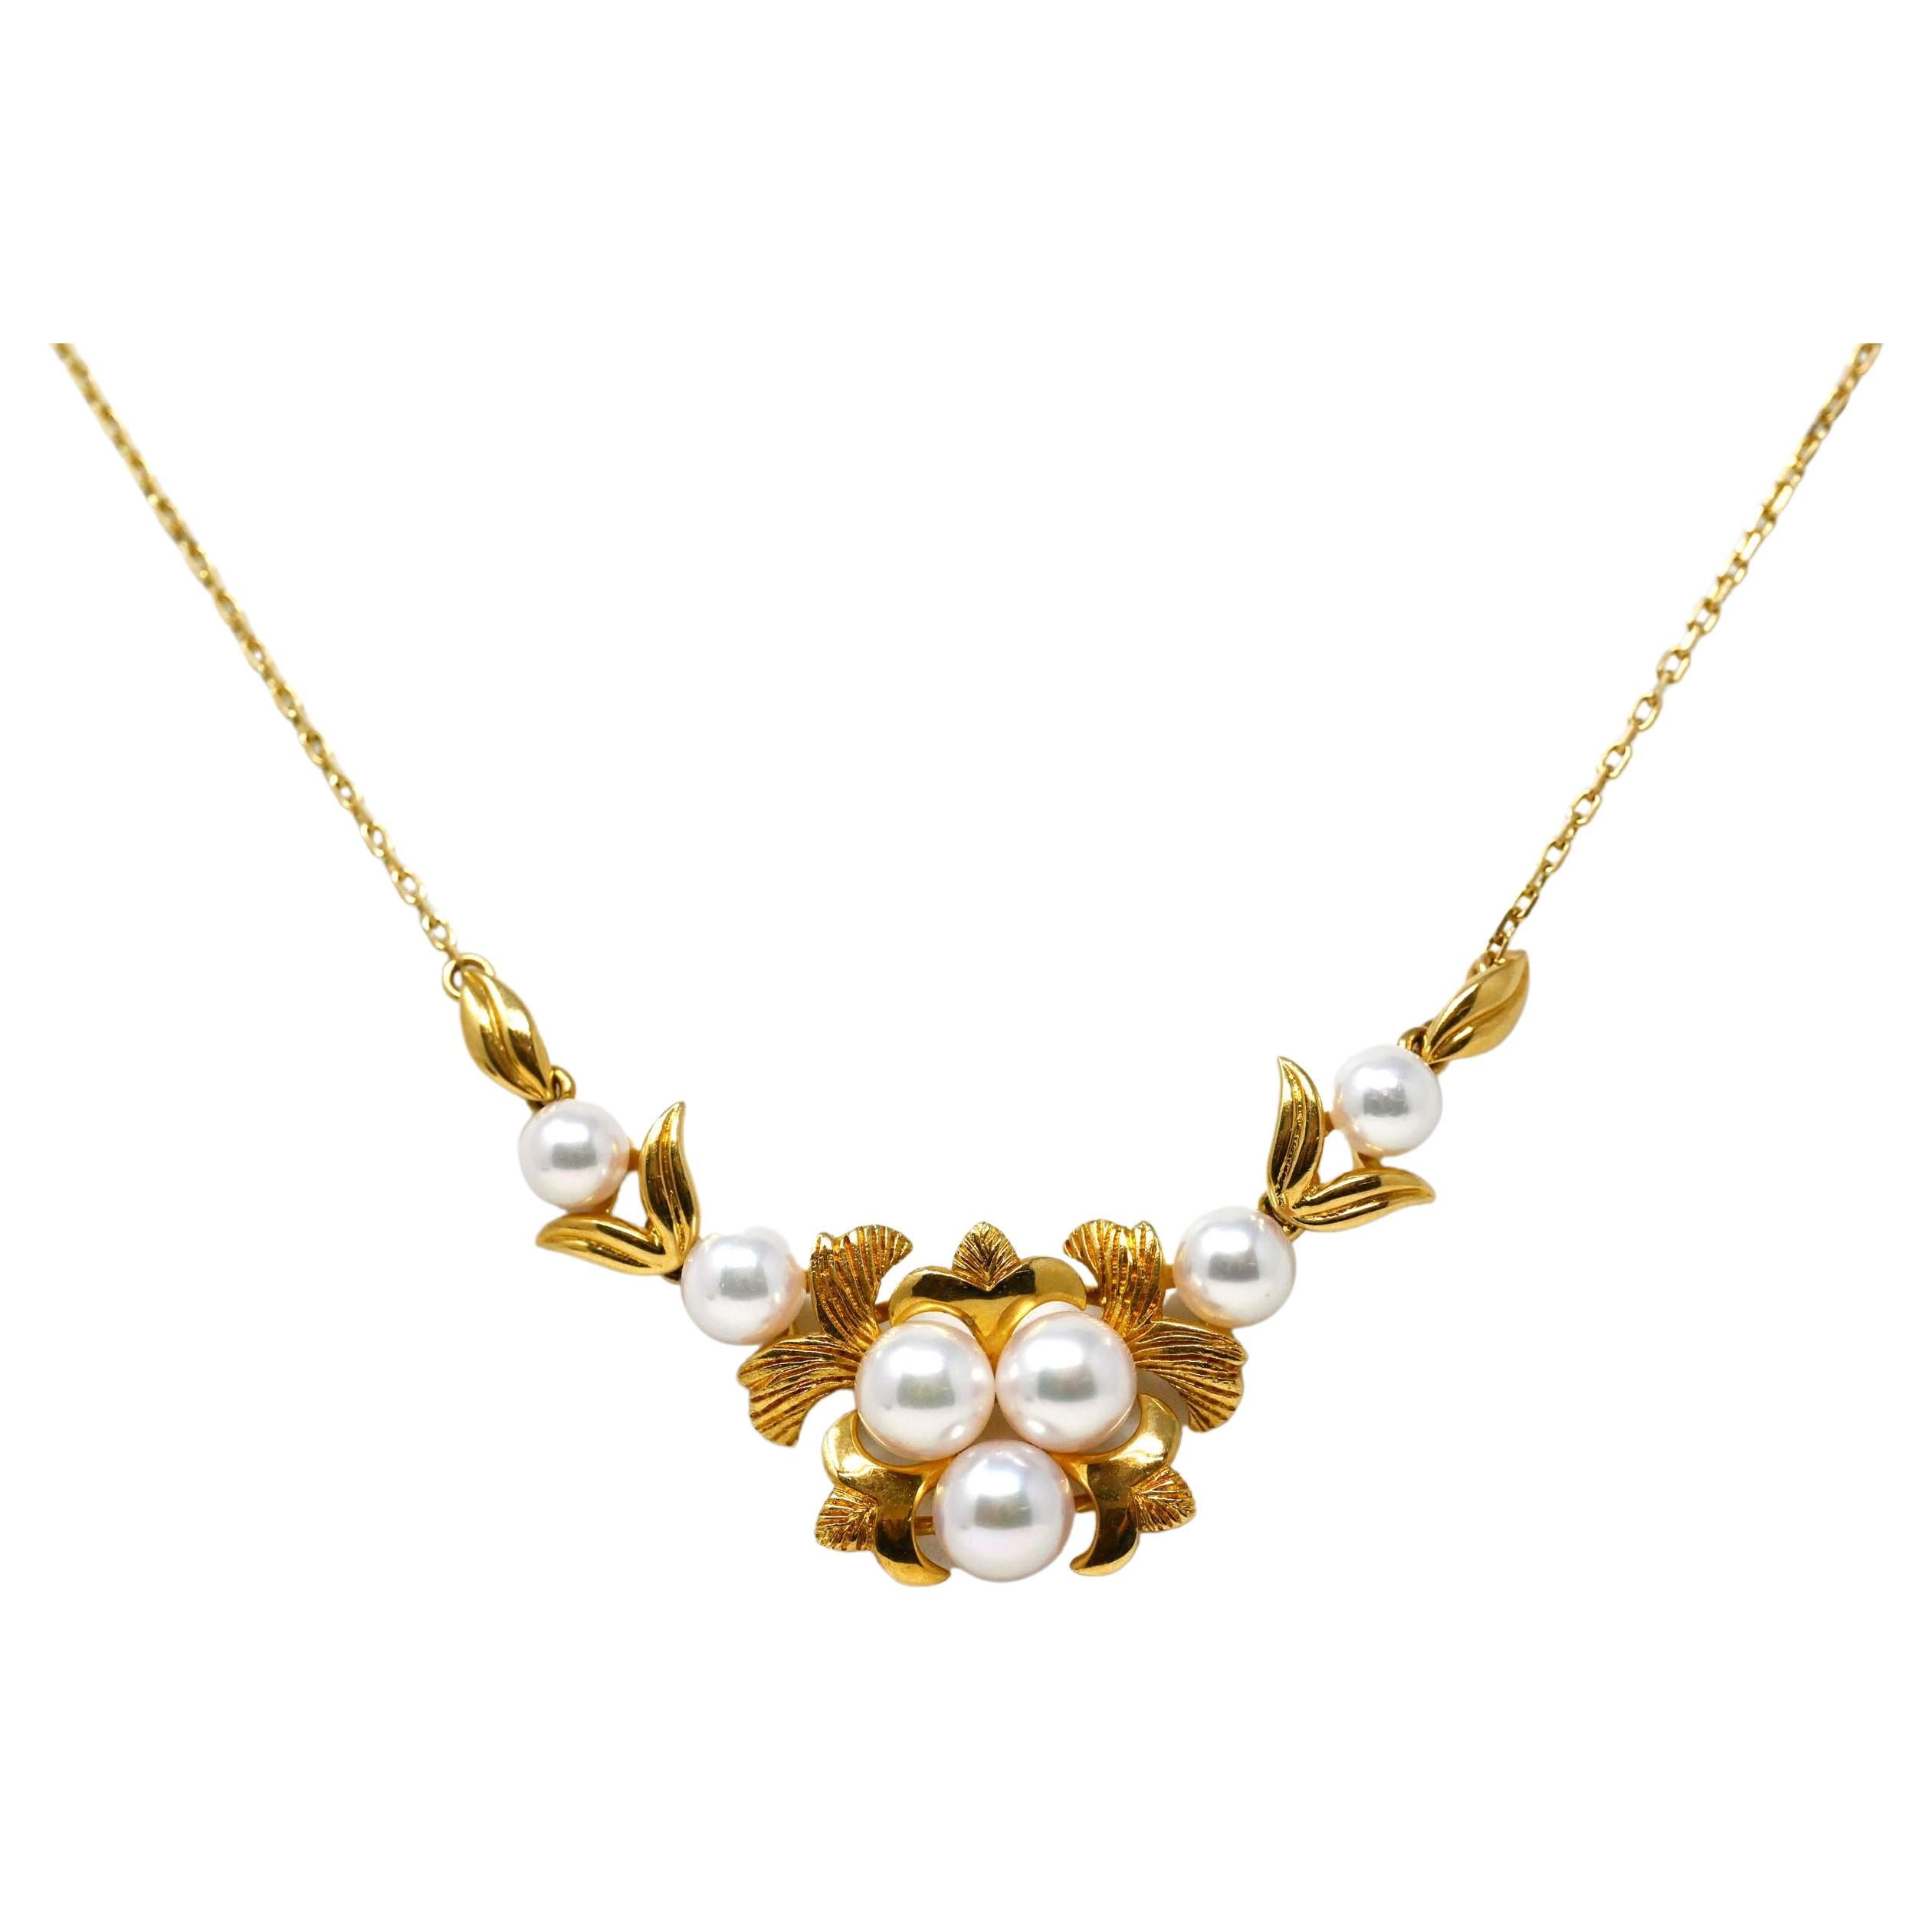 Vintage 18k Gold Cultured Pearls Necklace